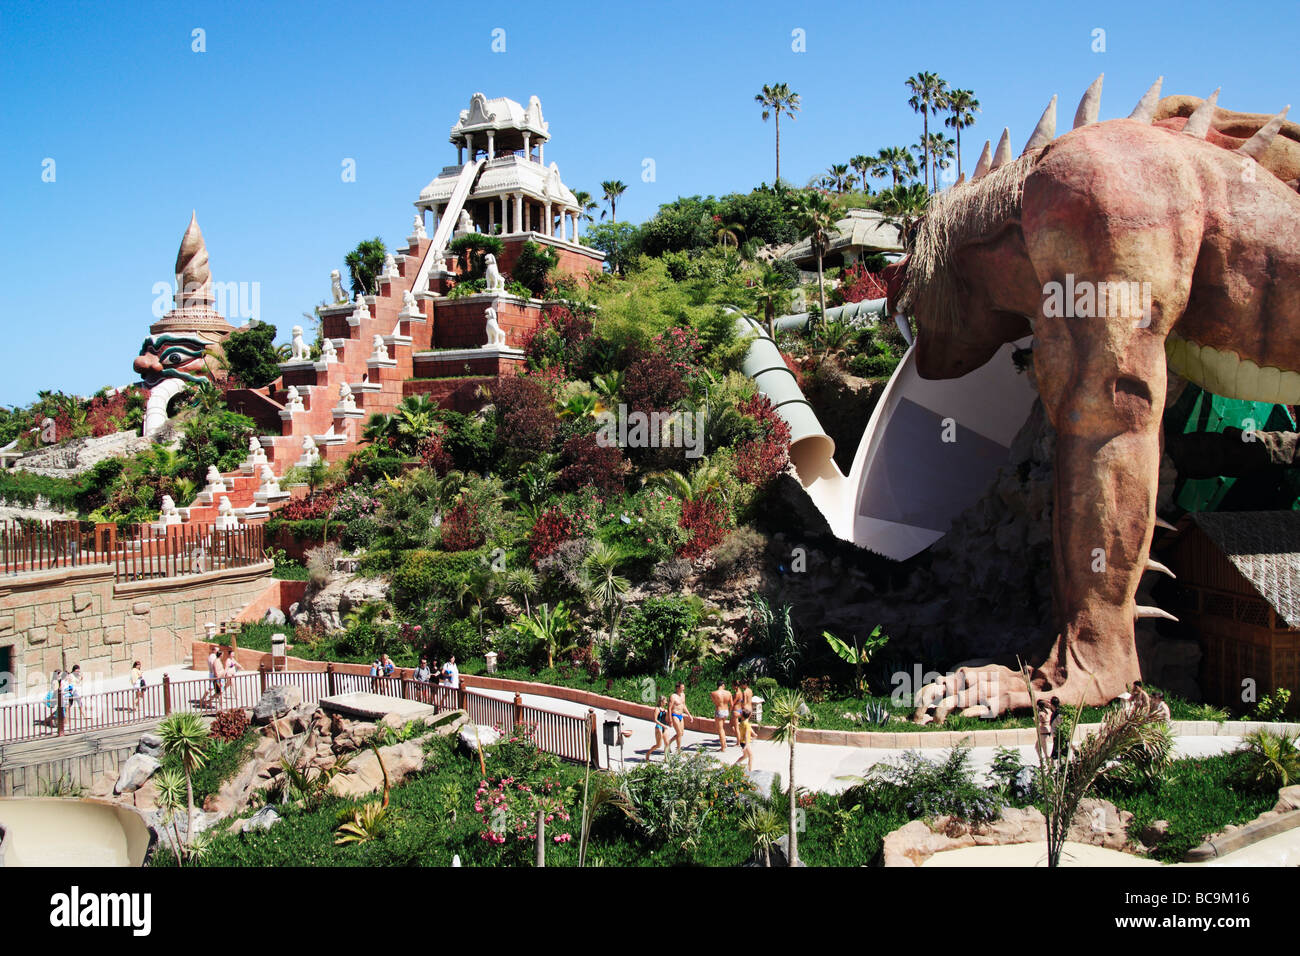 "Siam Park, das Wasser-Königreich", in der Nähe von Playa de Las Americas, Costa Adeje, Teneriffa, Kanarische Inseln, Spanien Stockfoto